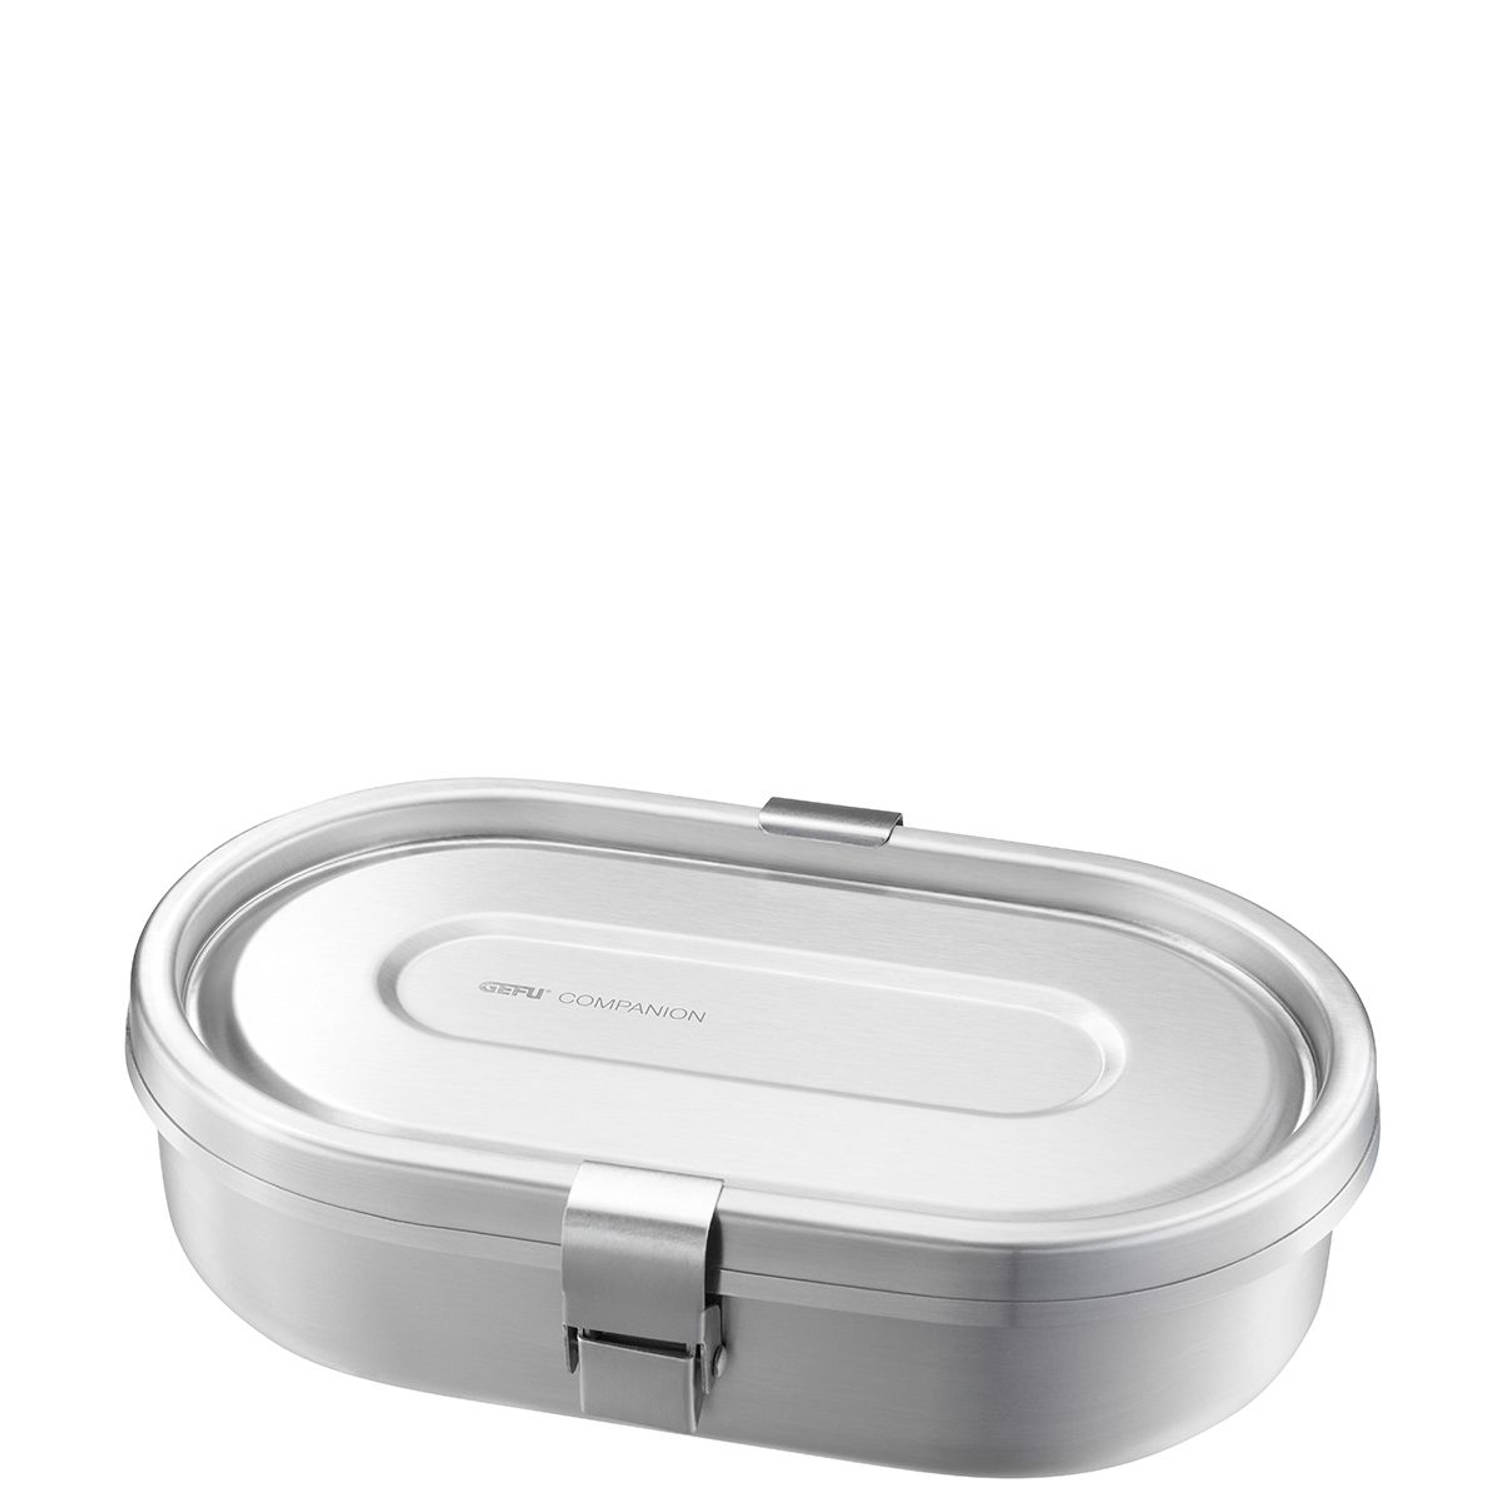 Lunchbox met 2 compartimenten, 700 ml, RVS, 20 jaar garantie - GEFU | COMPANION